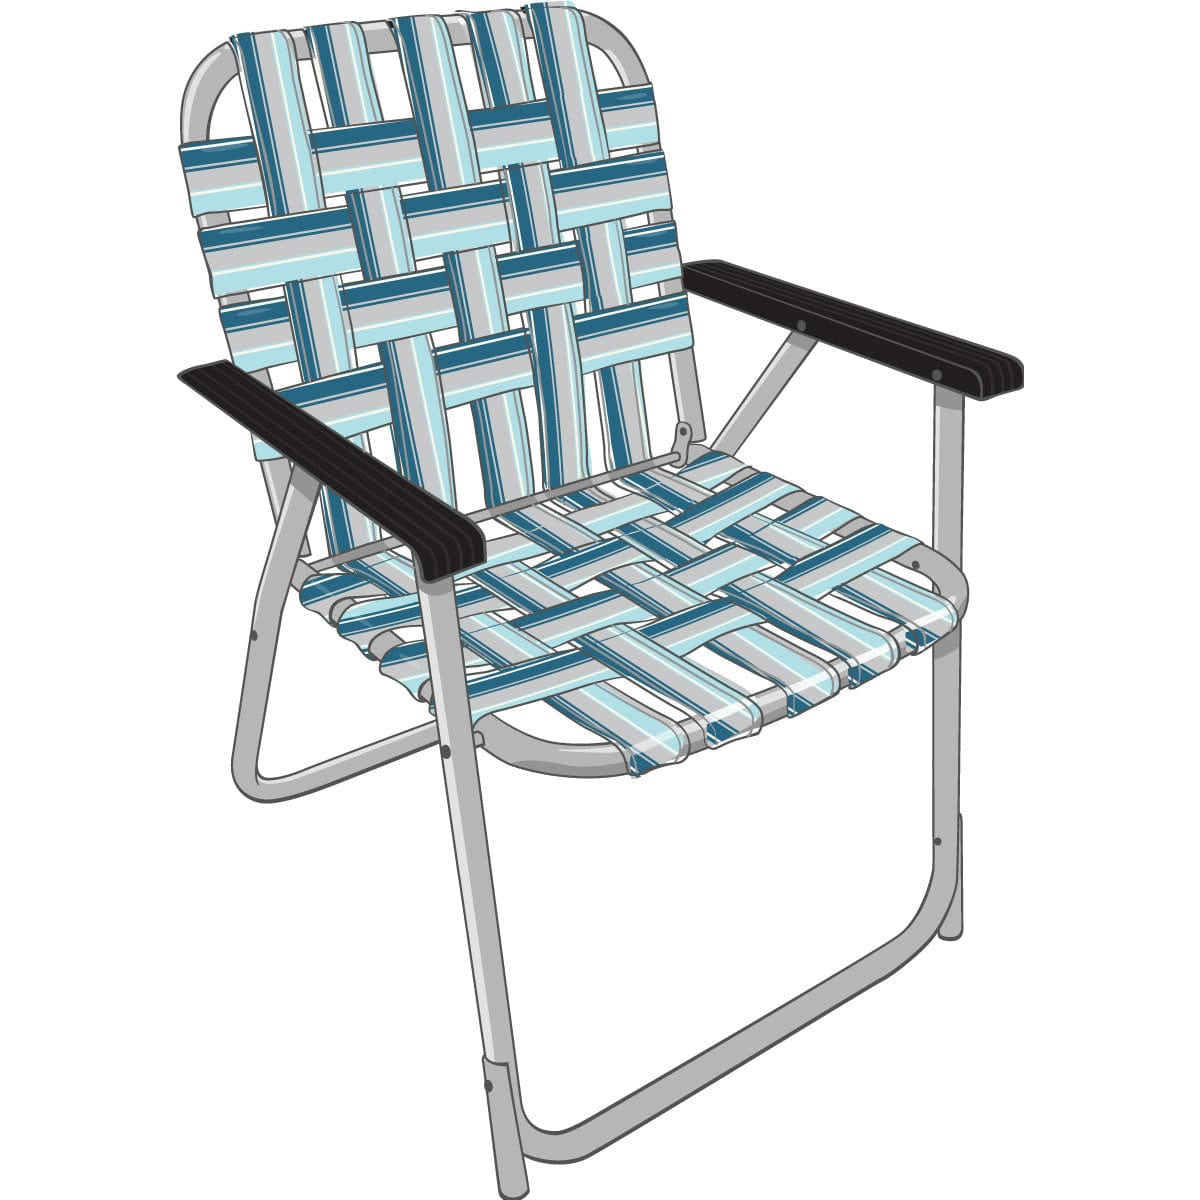 Kuma Outdoor Gear Not Qualified for Free Shipping Kuma Outdoor Gear Backtrack Chair Fezz Blue/Grey #KM-BTC-BG